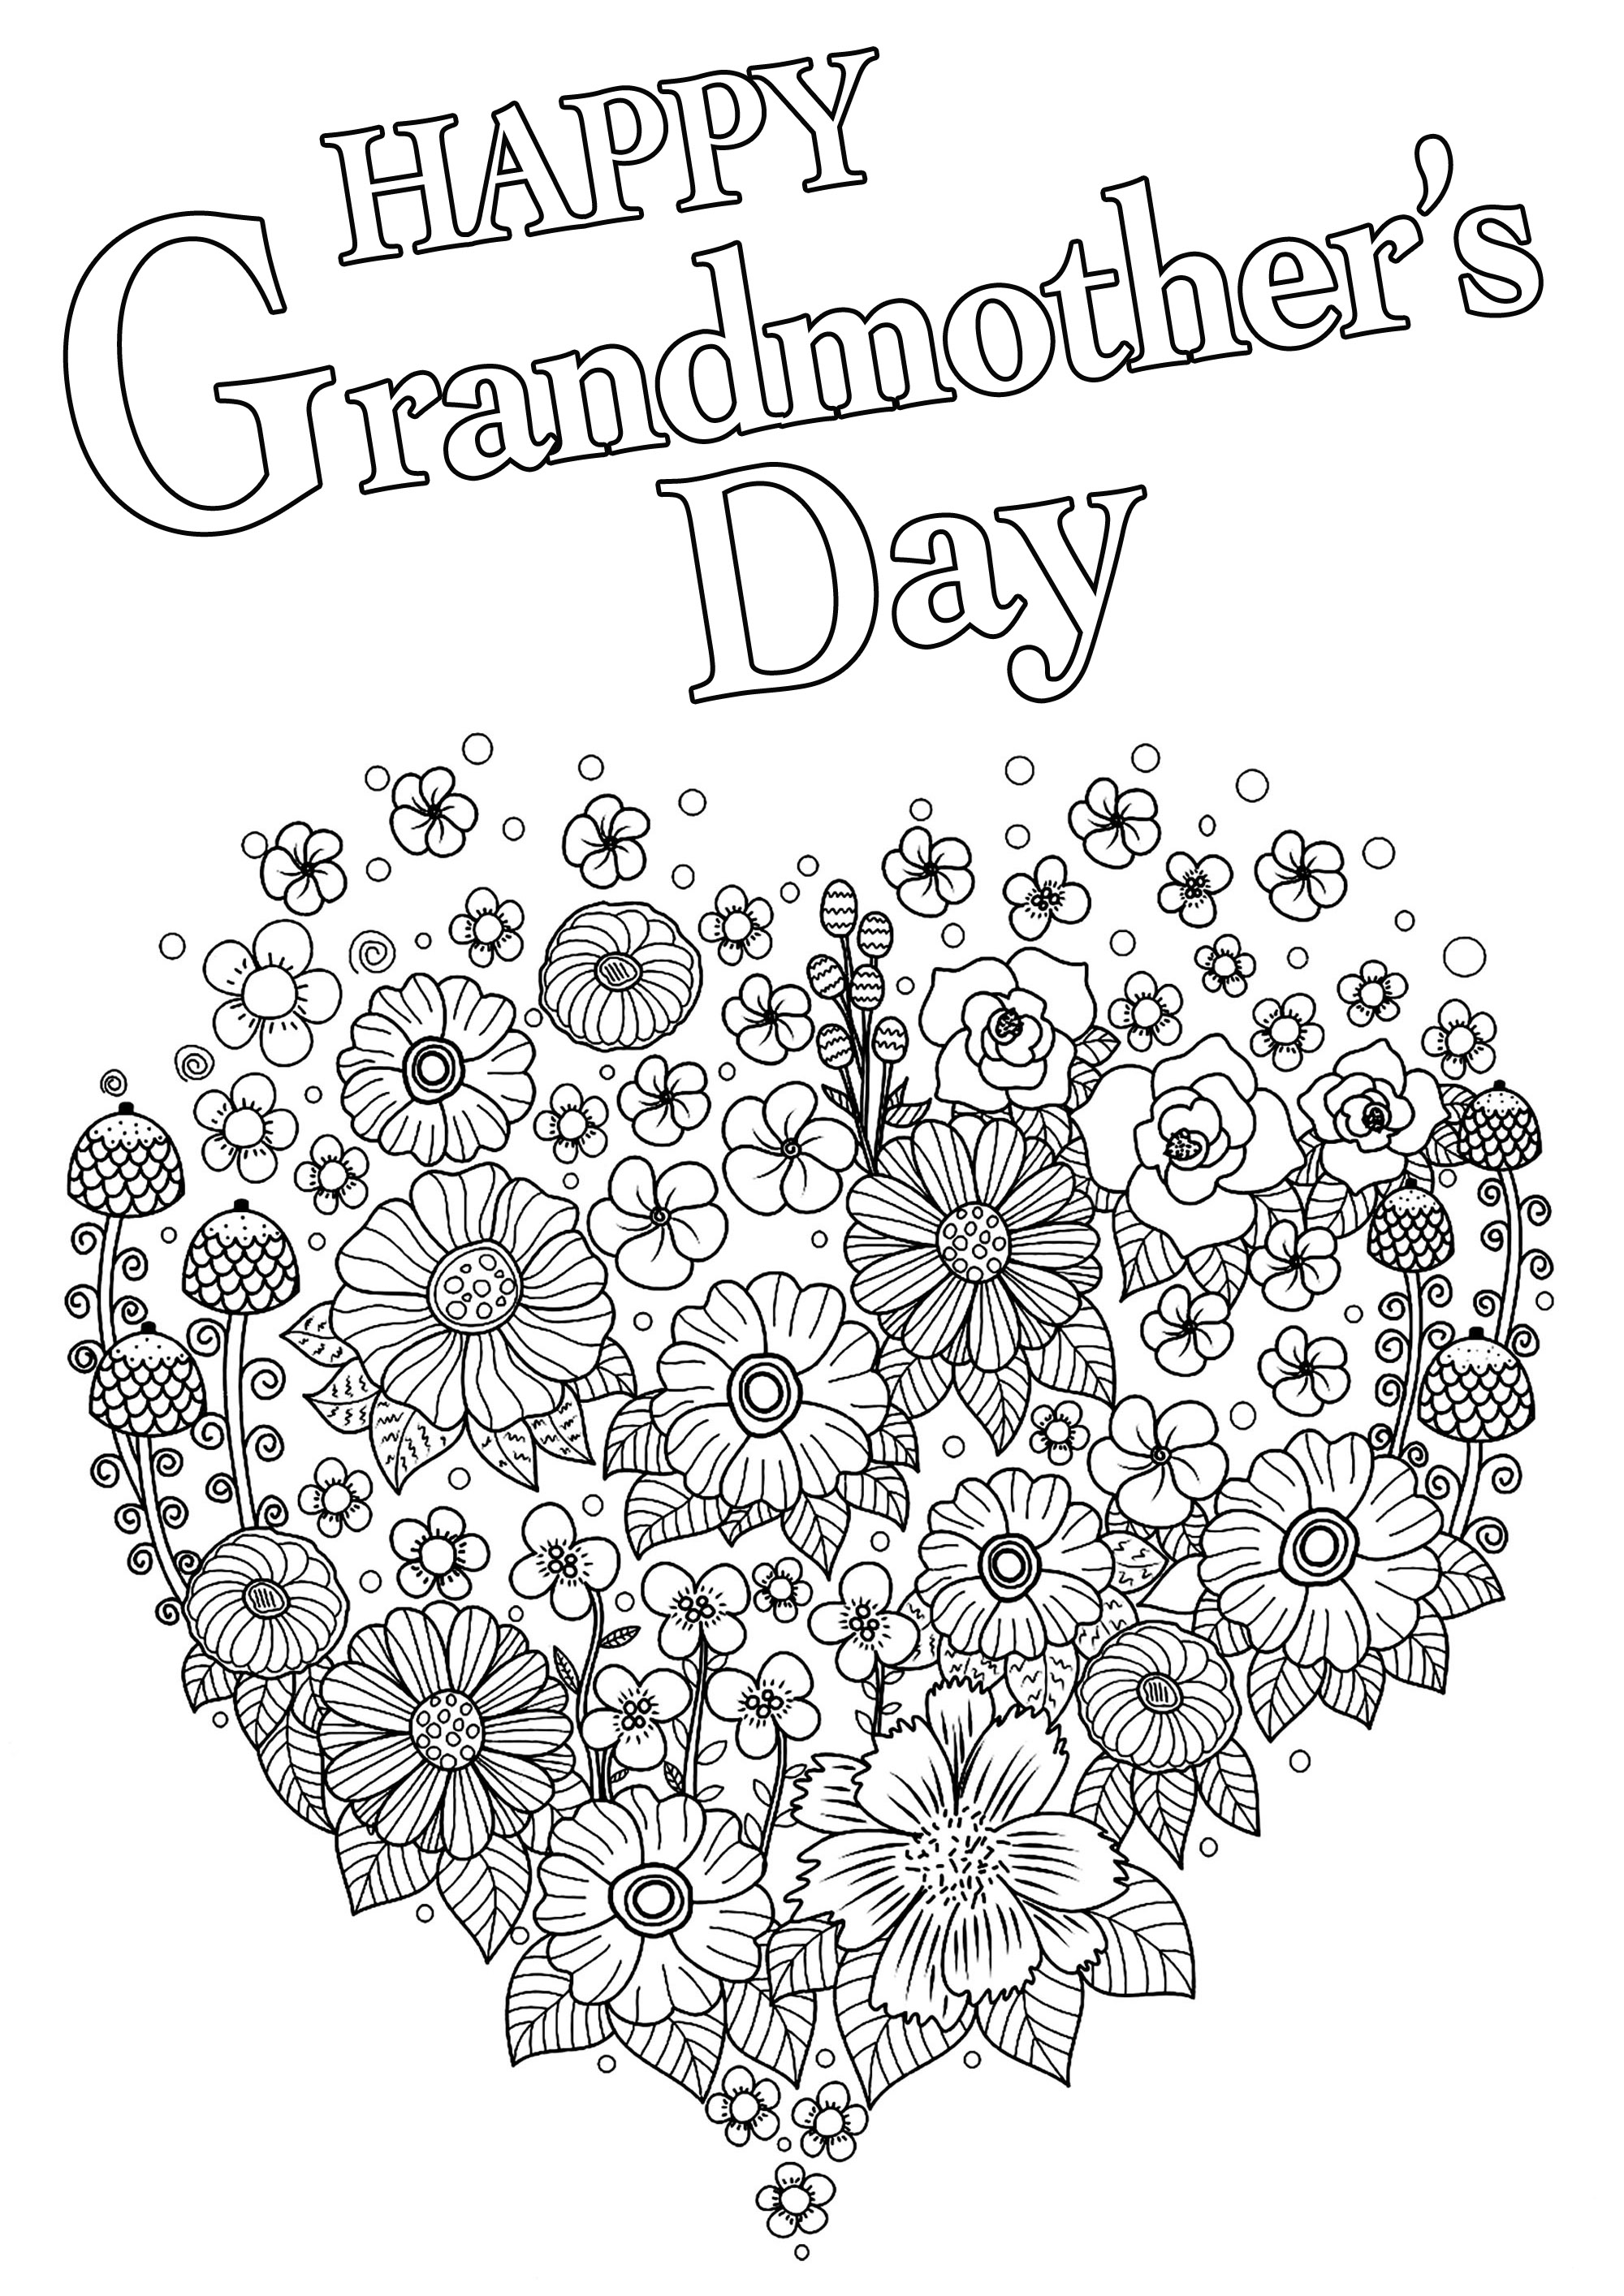 Feliz Dia da Avó para colorir: Coração cheio de várias flores